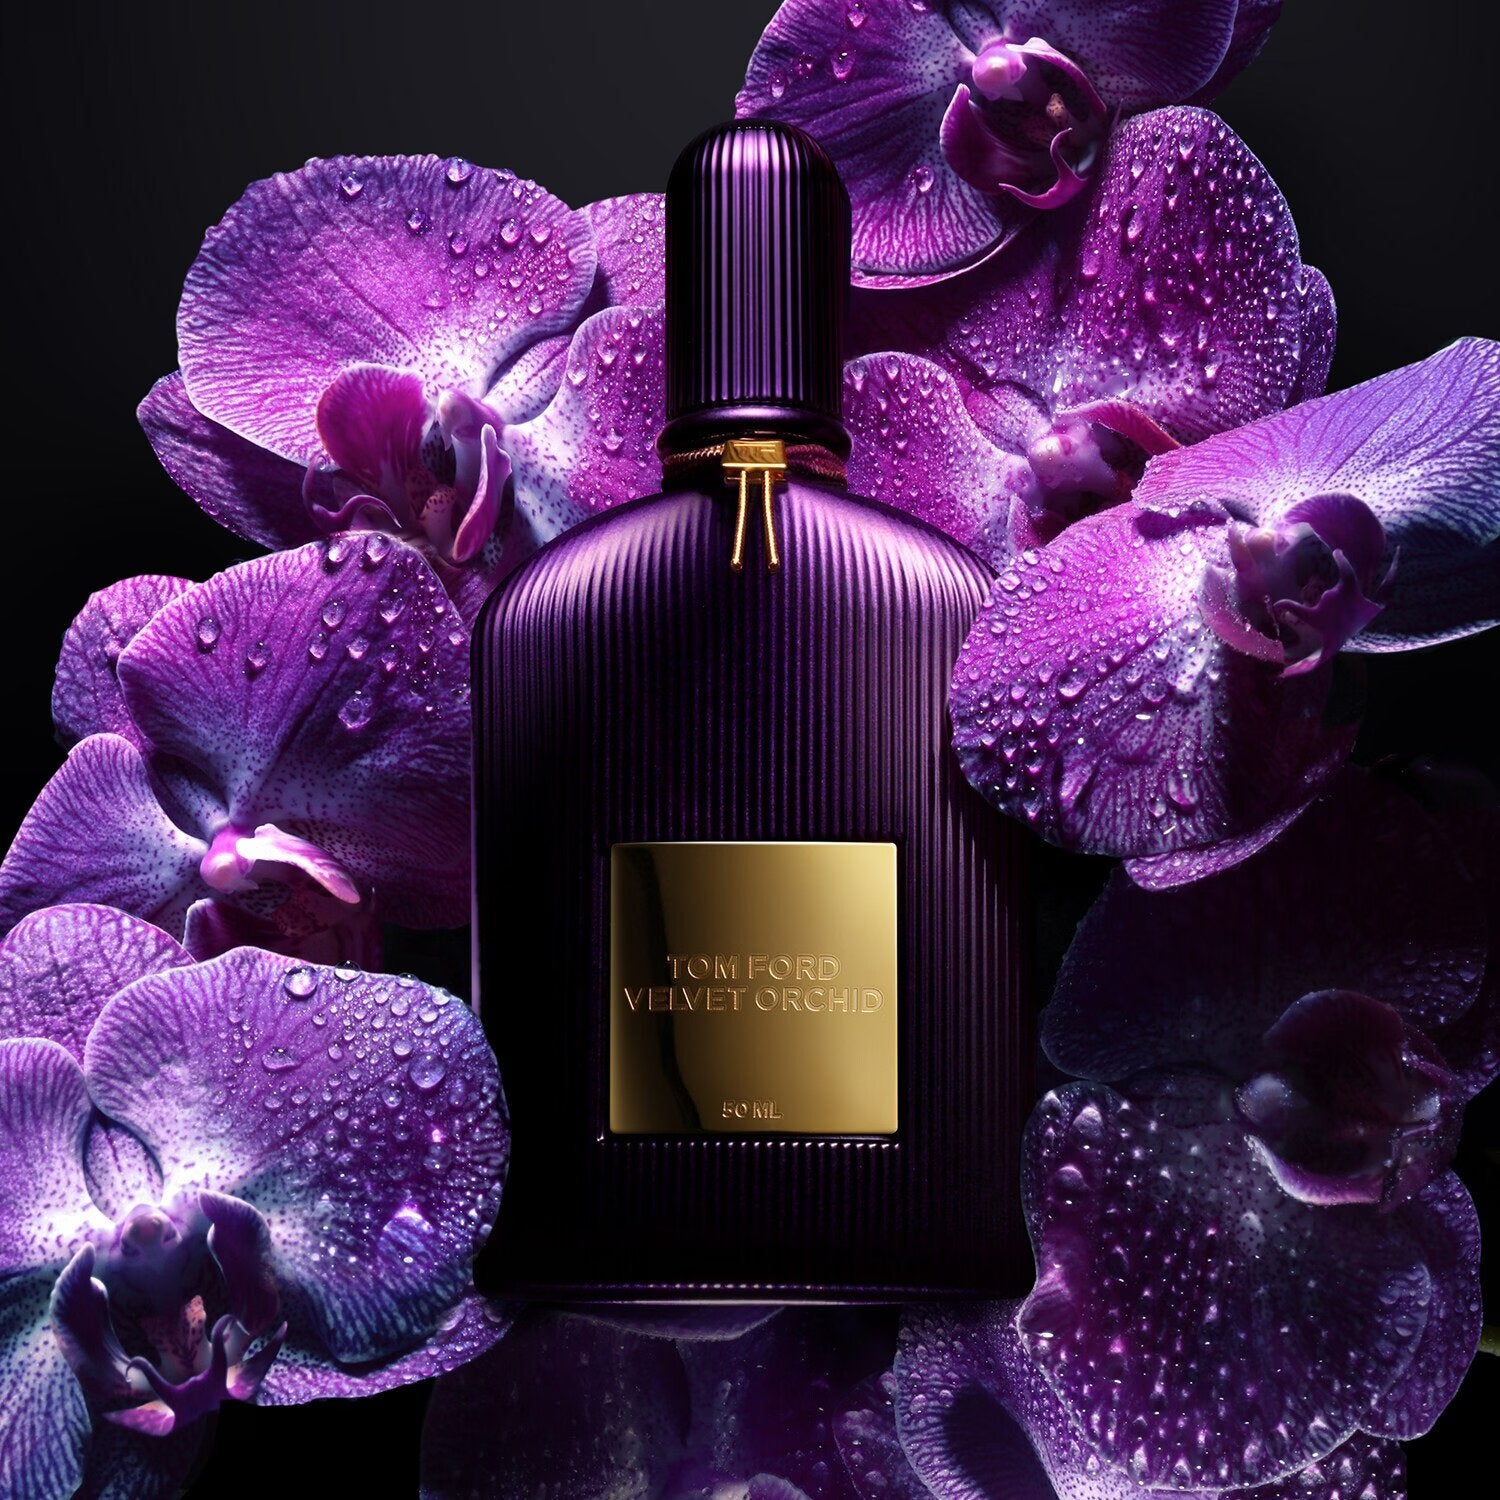 Tom Ford Velvet Orchid Eau De Parfum 100ml –